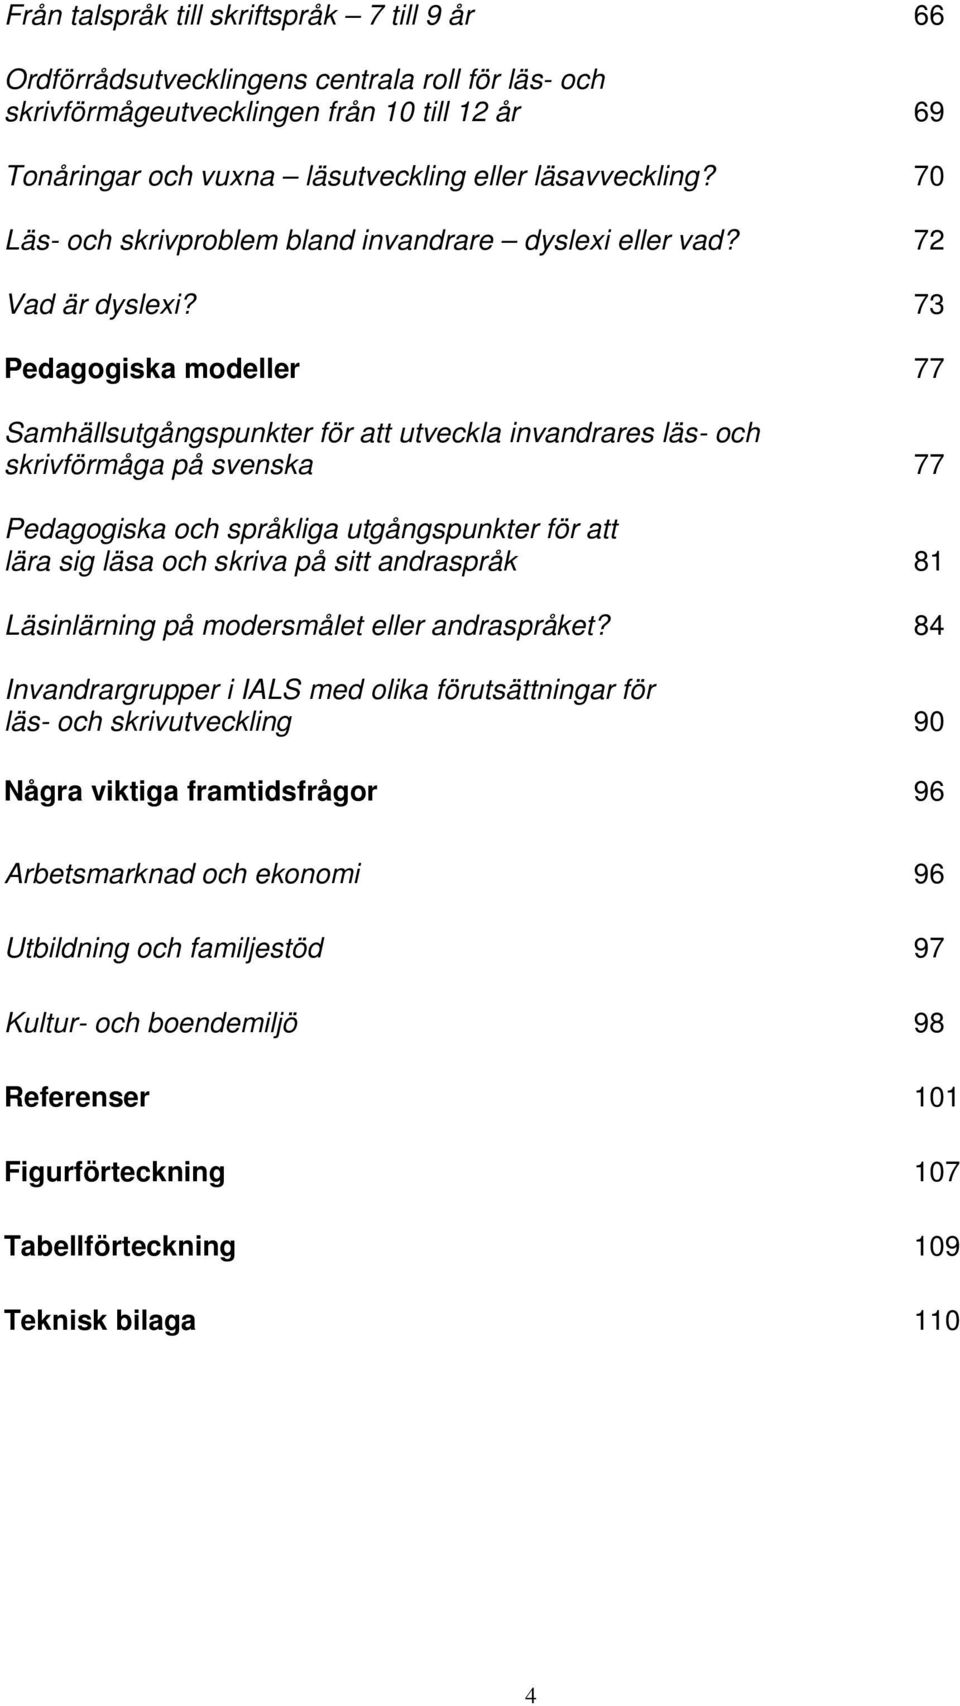 73 Pedagogiska modeller 77 Samhällsutgångspunkter för att utveckla invandrares läs- och skrivförmåga på svenska 77 Pedagogiska och språkliga utgångspunkter för att lära sig läsa och skriva på sitt